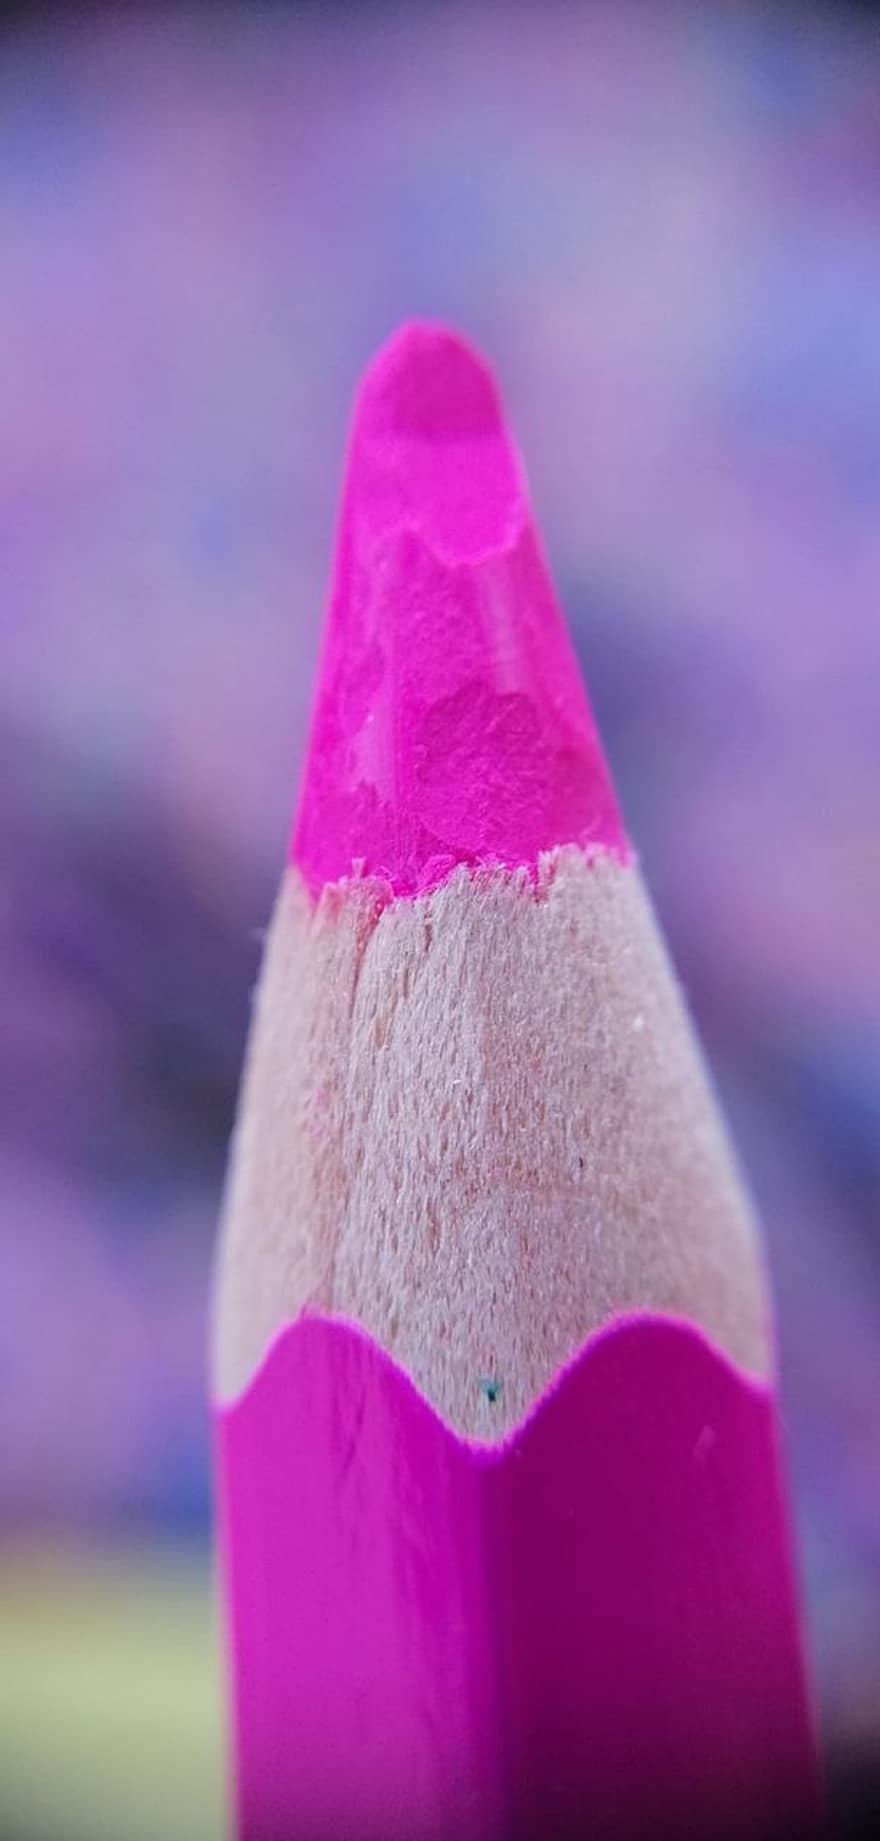 pensil warna, Pensil Merah Muda, Pensil Warna Merah Muda, berwarna merah muda, seni dan kerajinan, perlengkapan seni, bahan pewarna, warna, fotografi makro, bokeh